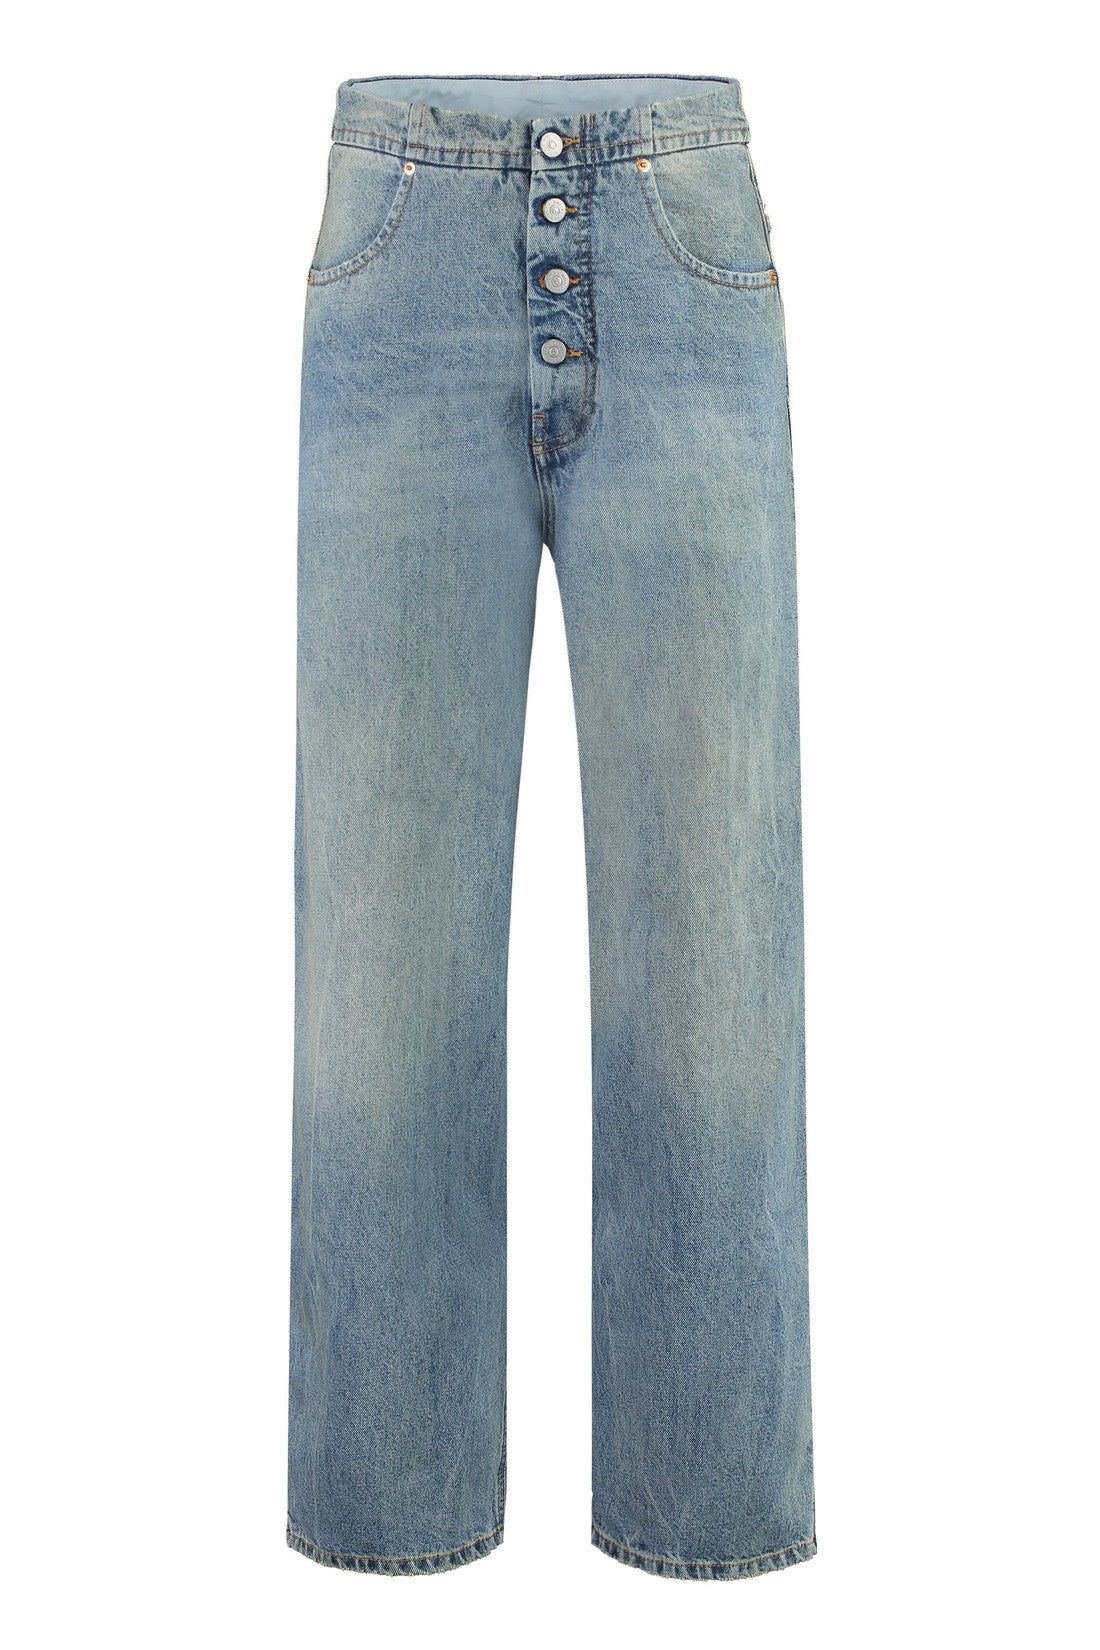 MM6 Maison Margiela-OUTLET-SALE-Straight leg jeans-ARCHIVIST